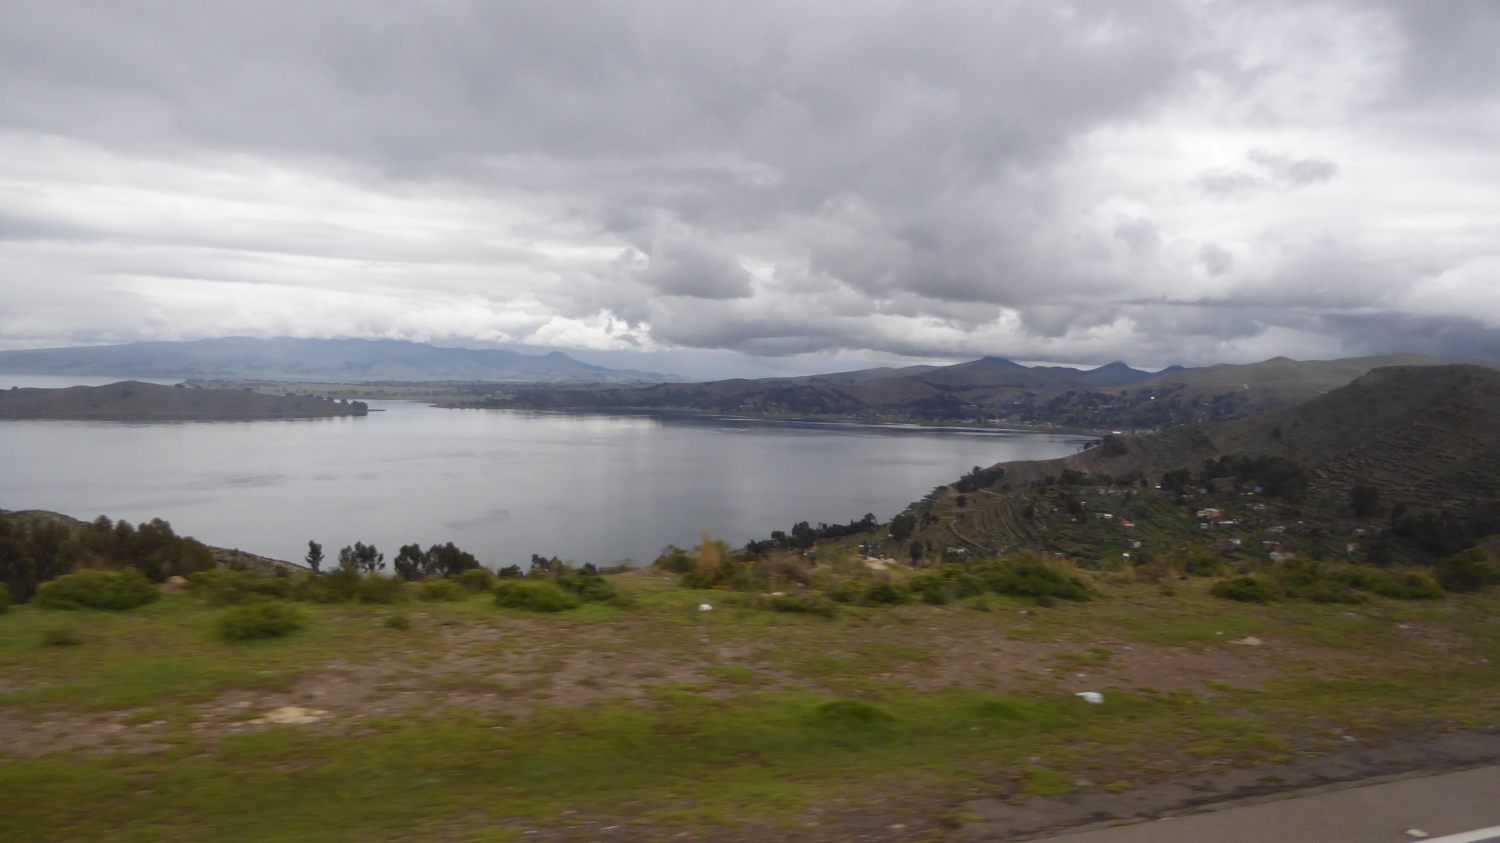 along Titicaca lake